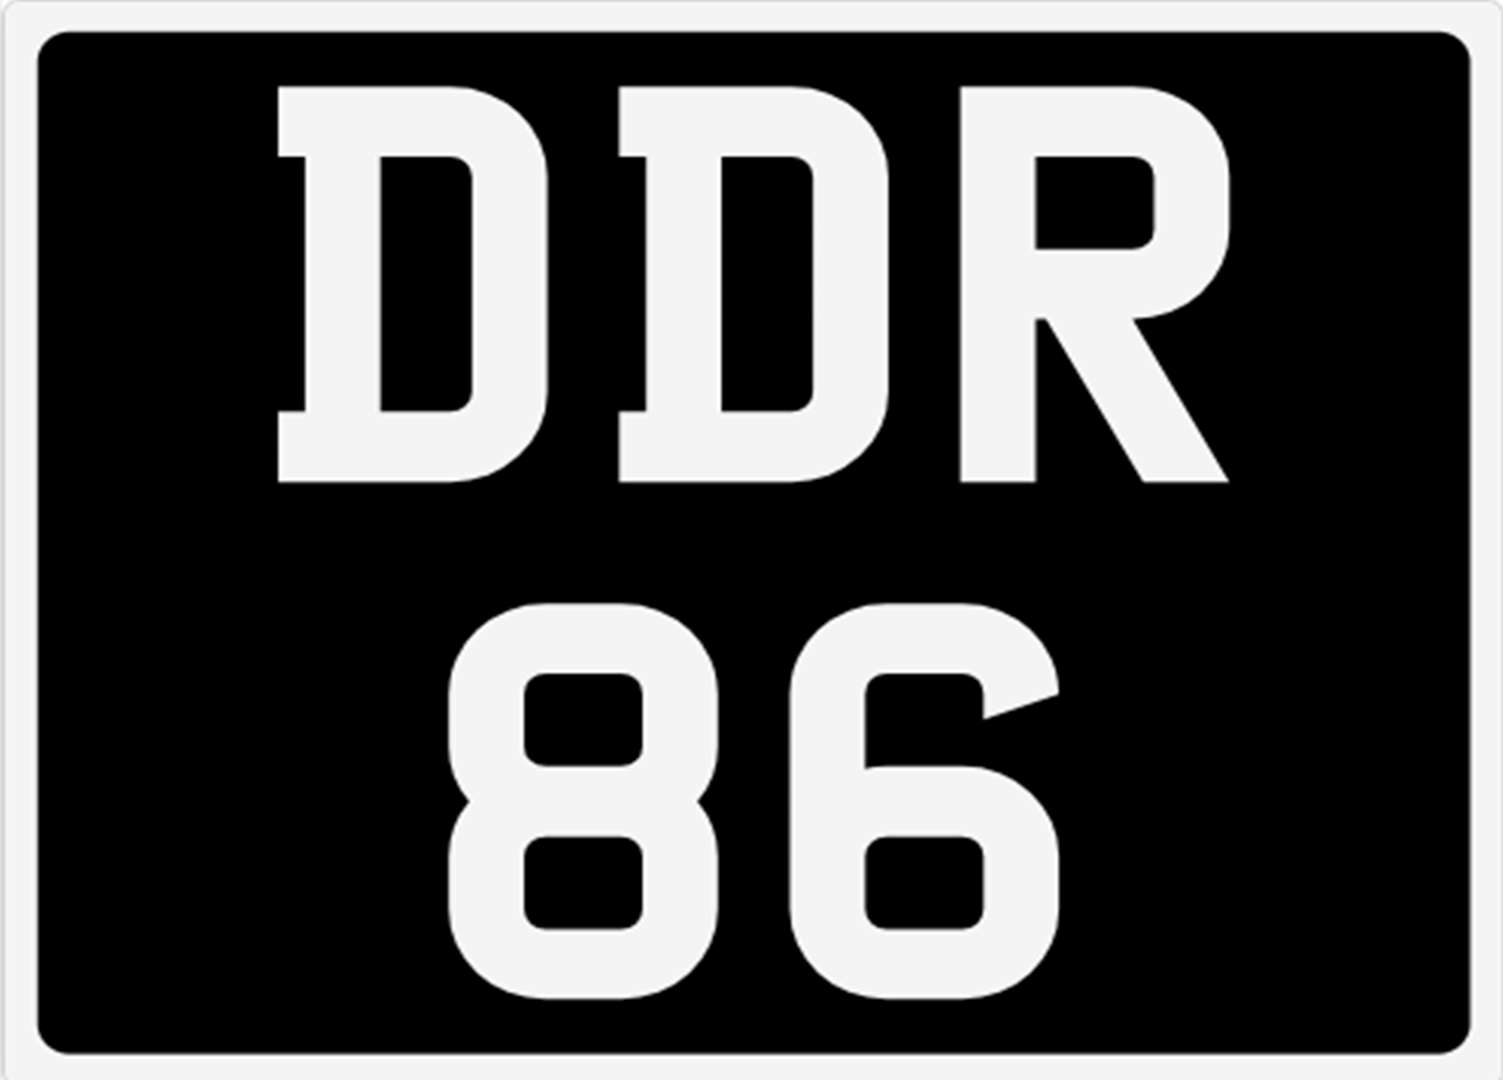 <p>&nbsp; DDR 86 Registration Number&nbsp;</p>